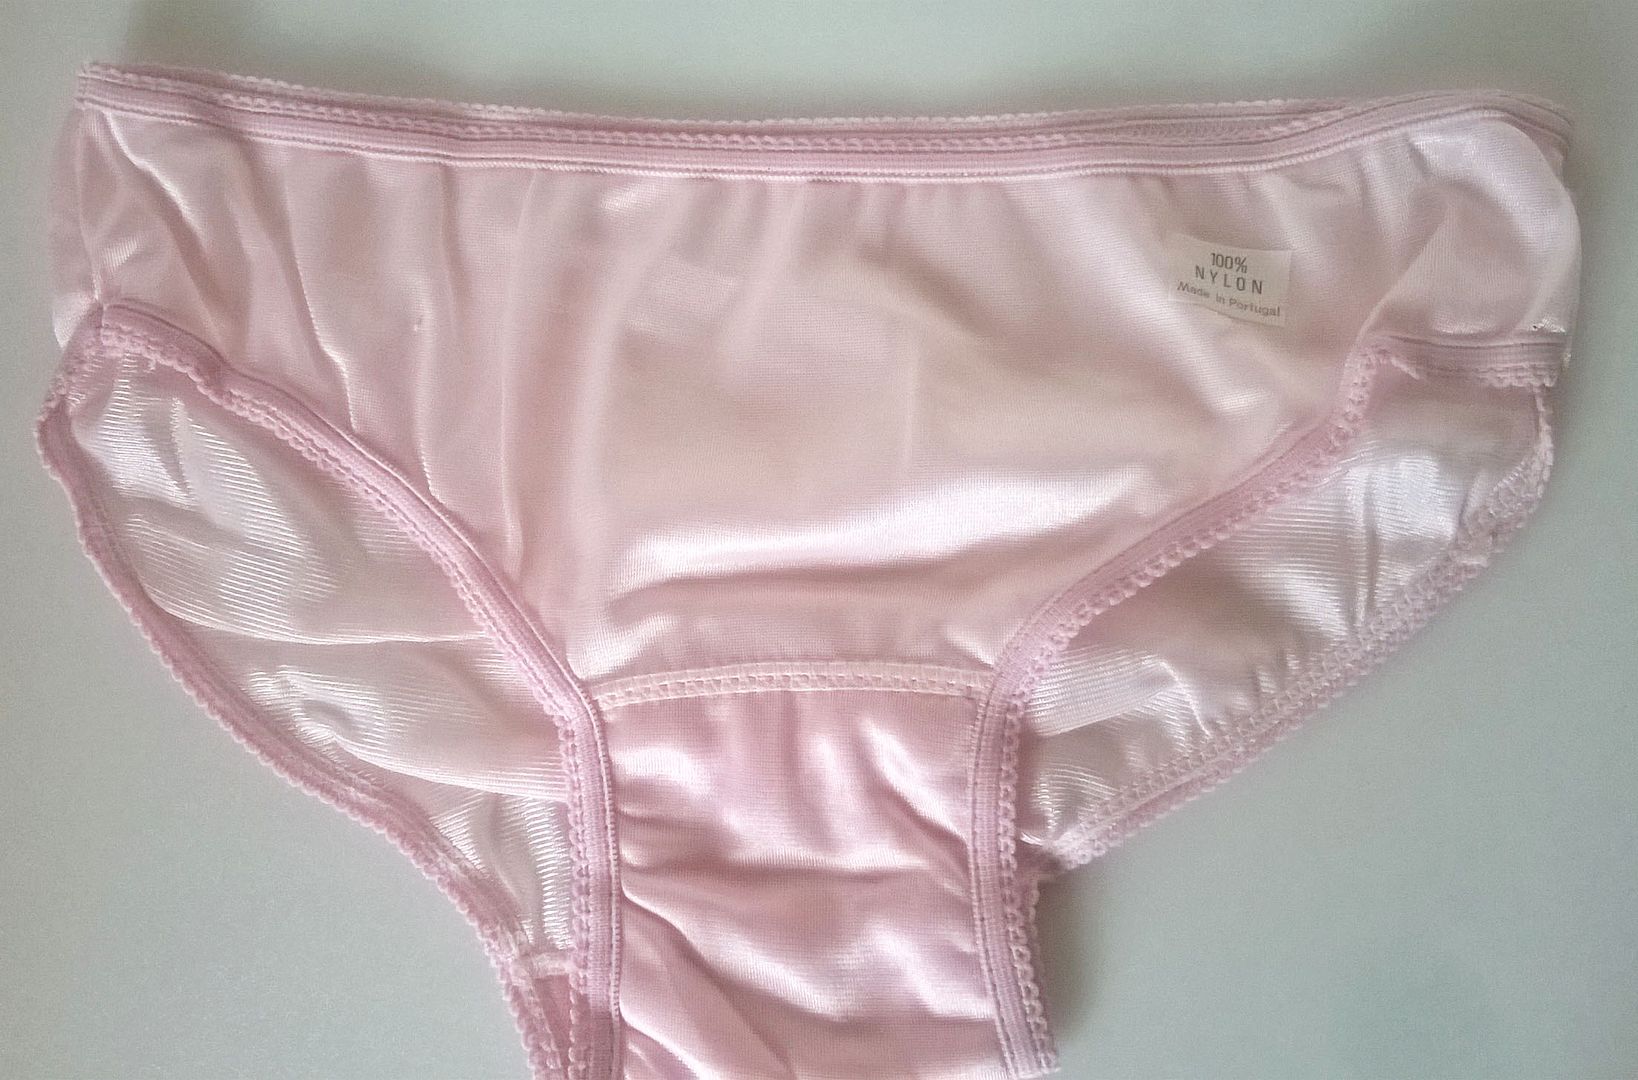 Ladies Or Teen Girls Silky Pink Nylon 1960s Panties Knickers